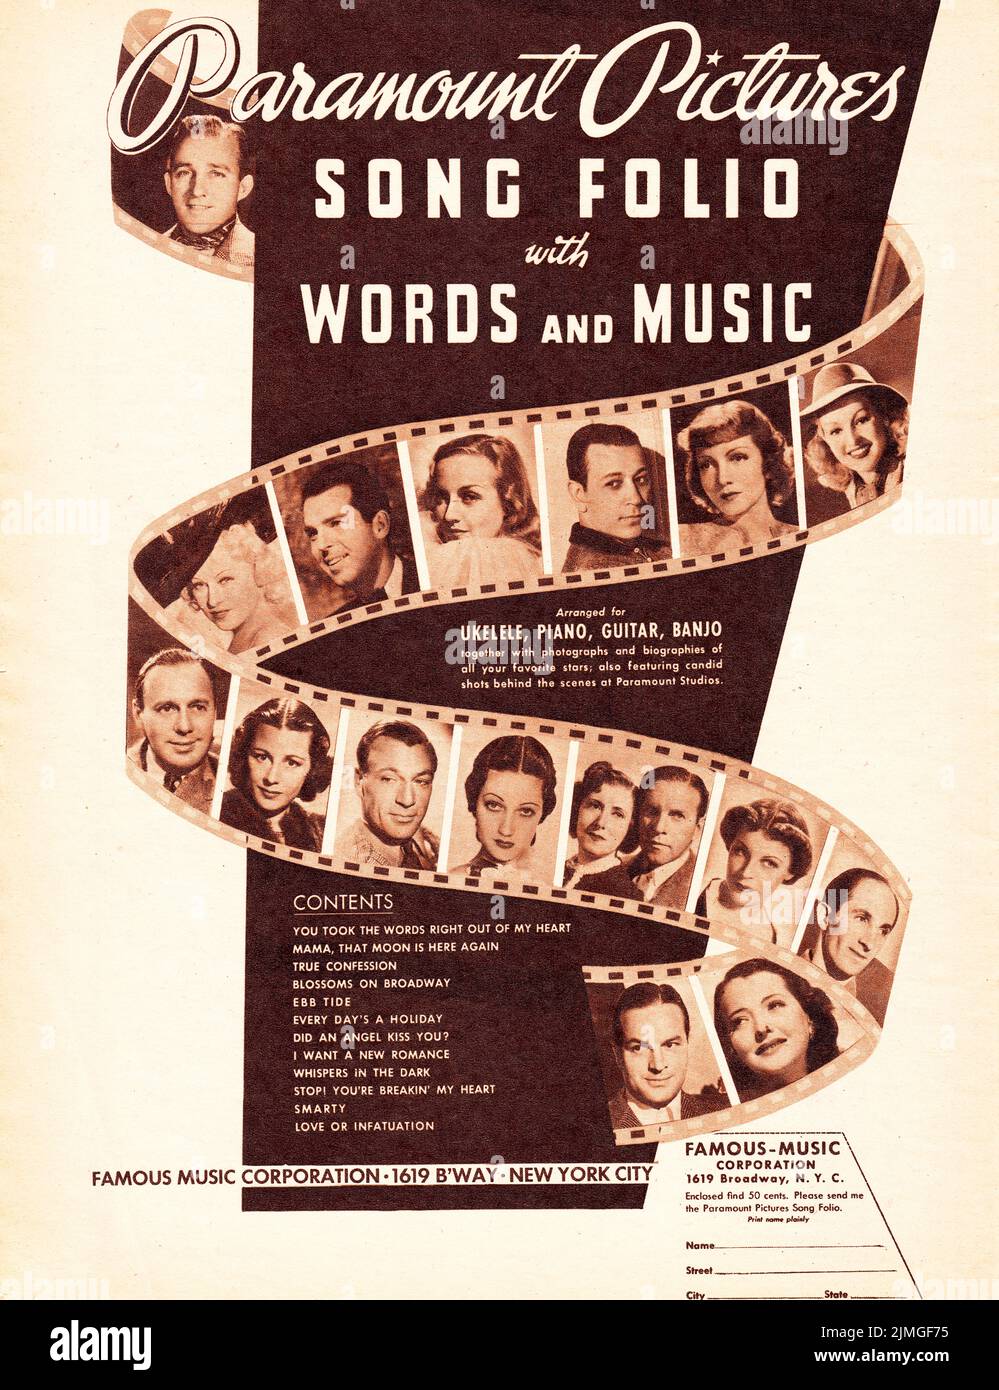 Une publicité sépia colorée d'un magazine musical 1938 pour Paramount Pictures Song Folio partitions présentant des photos de célébrités célèbres telles que Bing Crosby, Jack Benny, Gary Cooper, et d'autres. De la célèbre Music Corporation. Banque D'Images